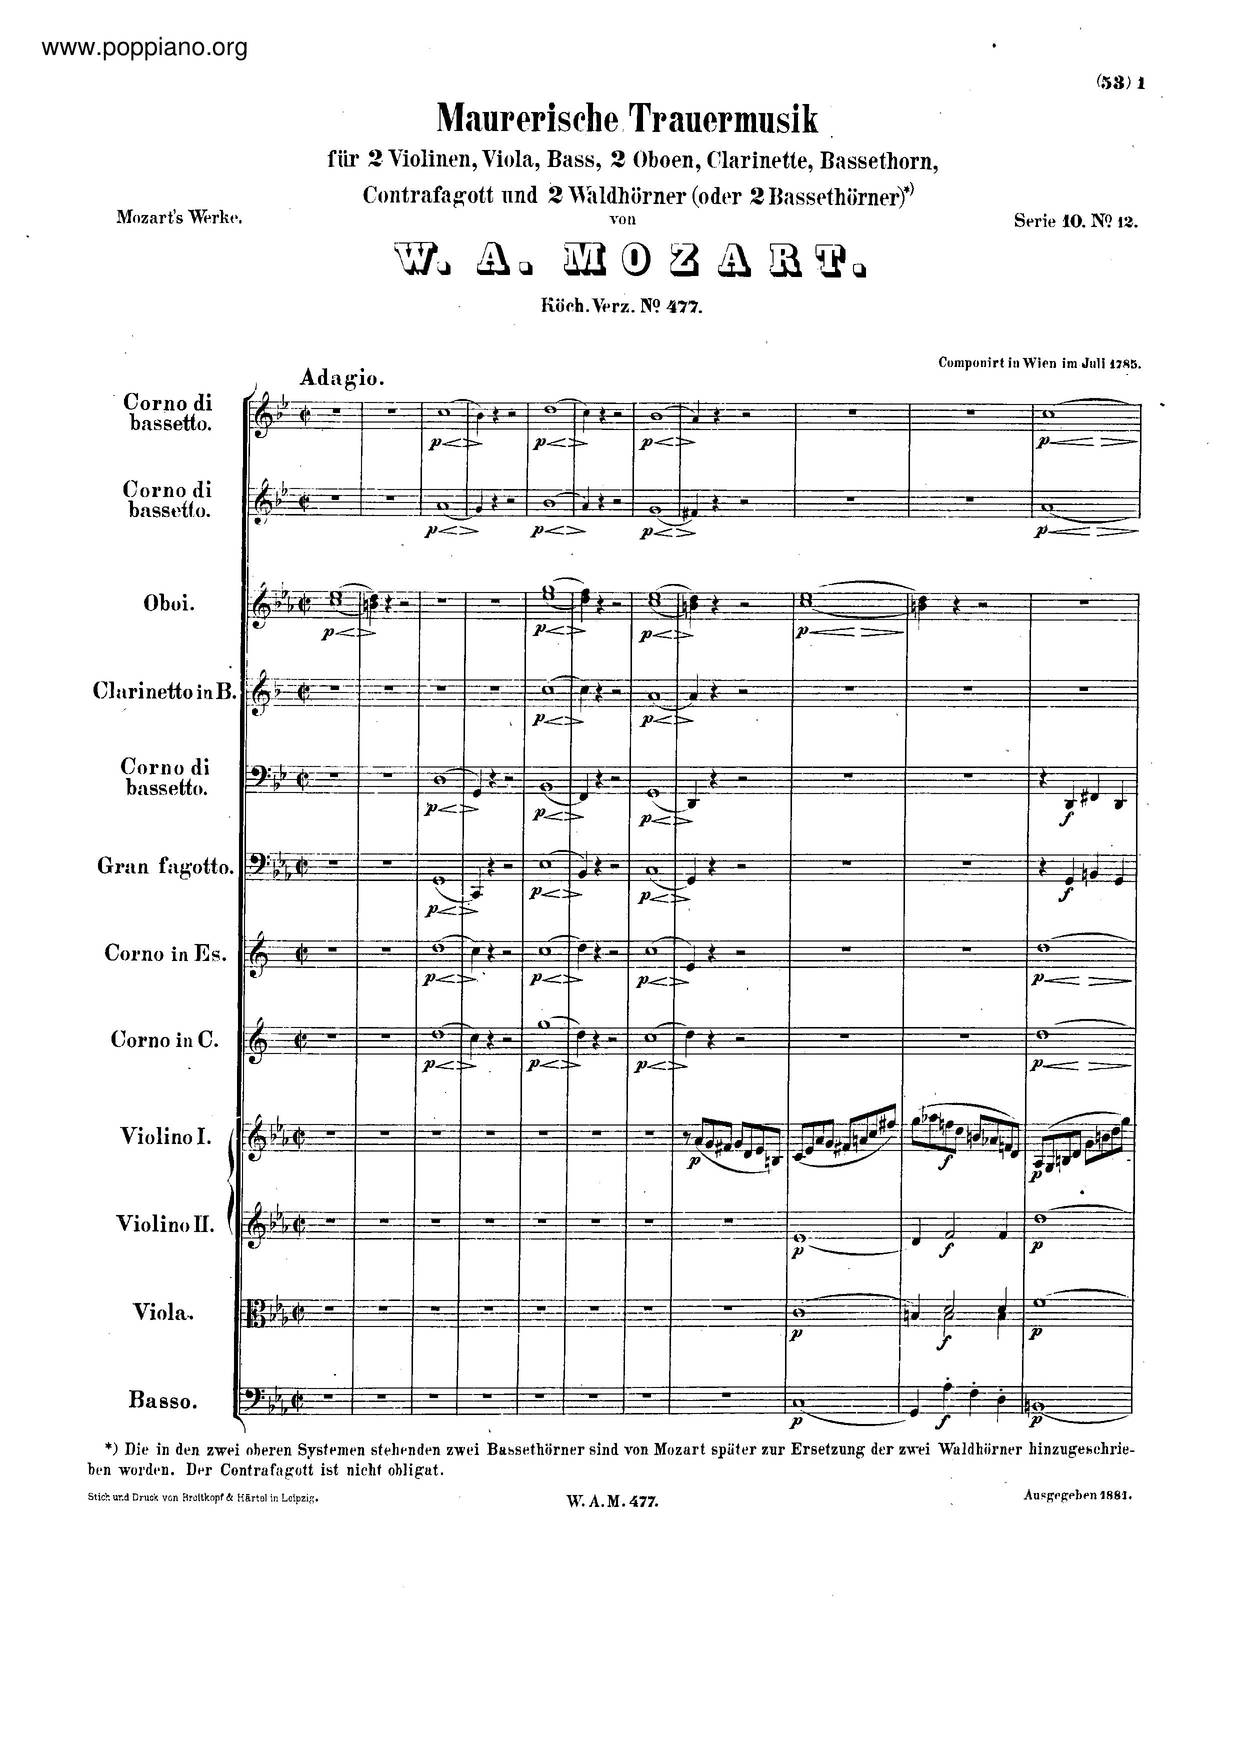 Maurerische Trauermusik, K. 477/479A Score